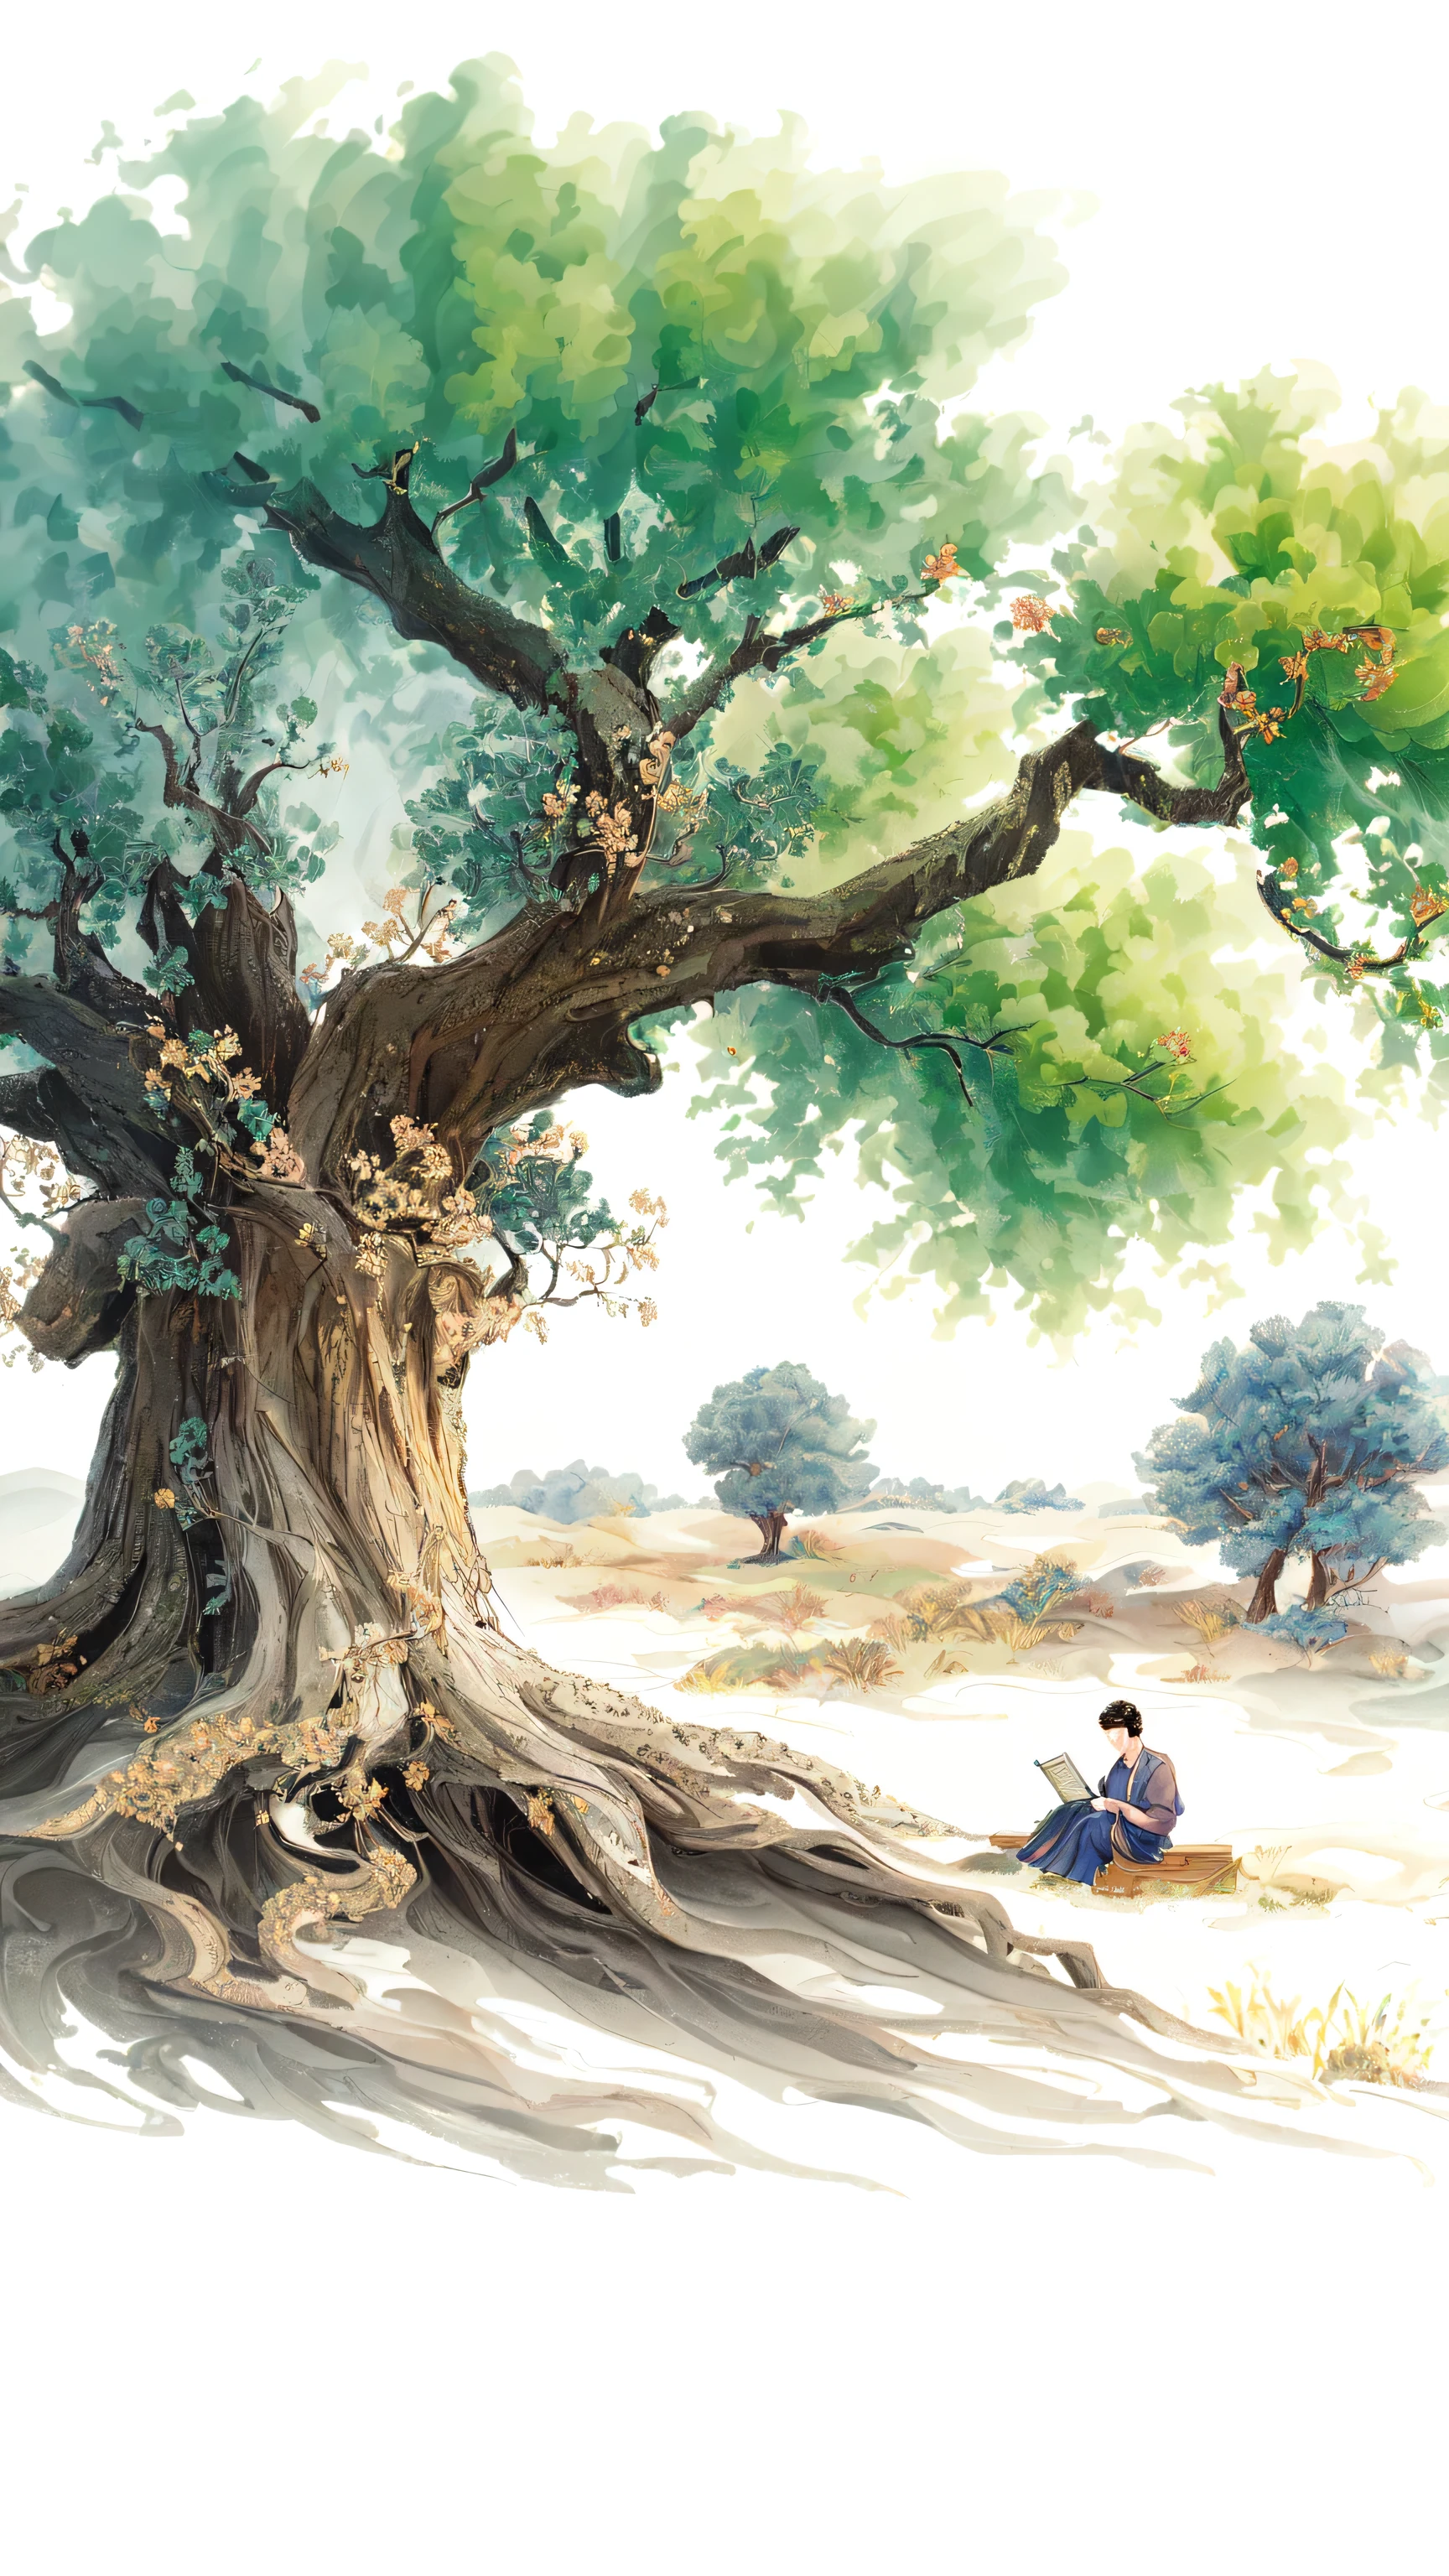 painting of a man يجلس تحت شجرة with a book, الفنان الكوري, القراءة تحت الشجرة, مستوحاة من هان يونغهاو, بواسطة بو هوا, التوضيح الفني الجميل, مؤلف：بيان شيانغبي, الفنانين الصينيين, الأشجار القديمة, يجلس تحت شجرة, مؤلف Kim Hong-do, نمط الألوان المائية الصينية, من خلال سونغ تشوي